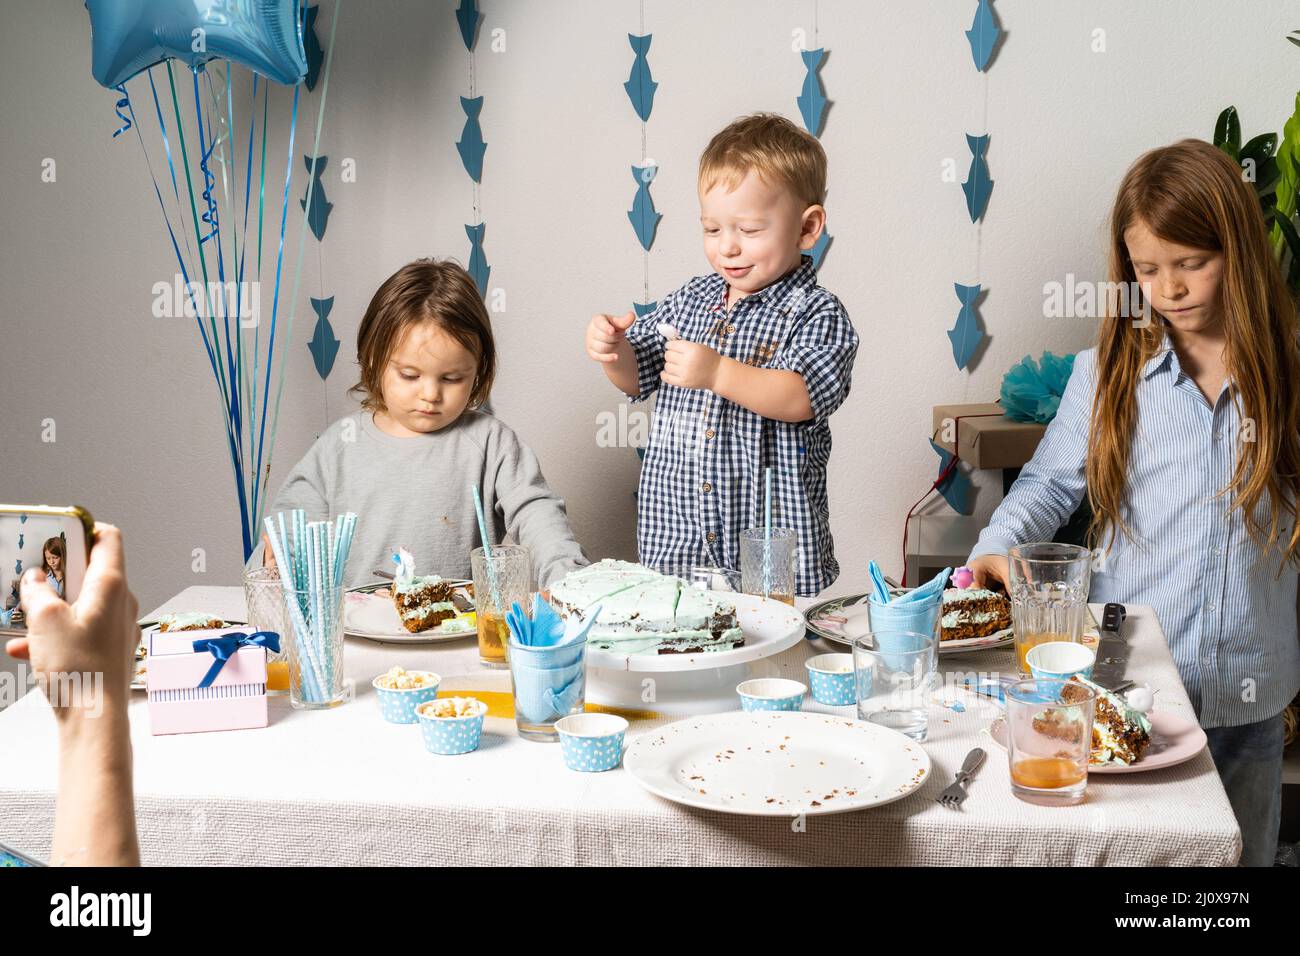 Fratelli. Compleanno del ragazzo al tavolo. I ragazzi al tavolo tagliano una torta di compleanno. Mamma scatta foto del compleanno del bambino al telefono. Foto Stock